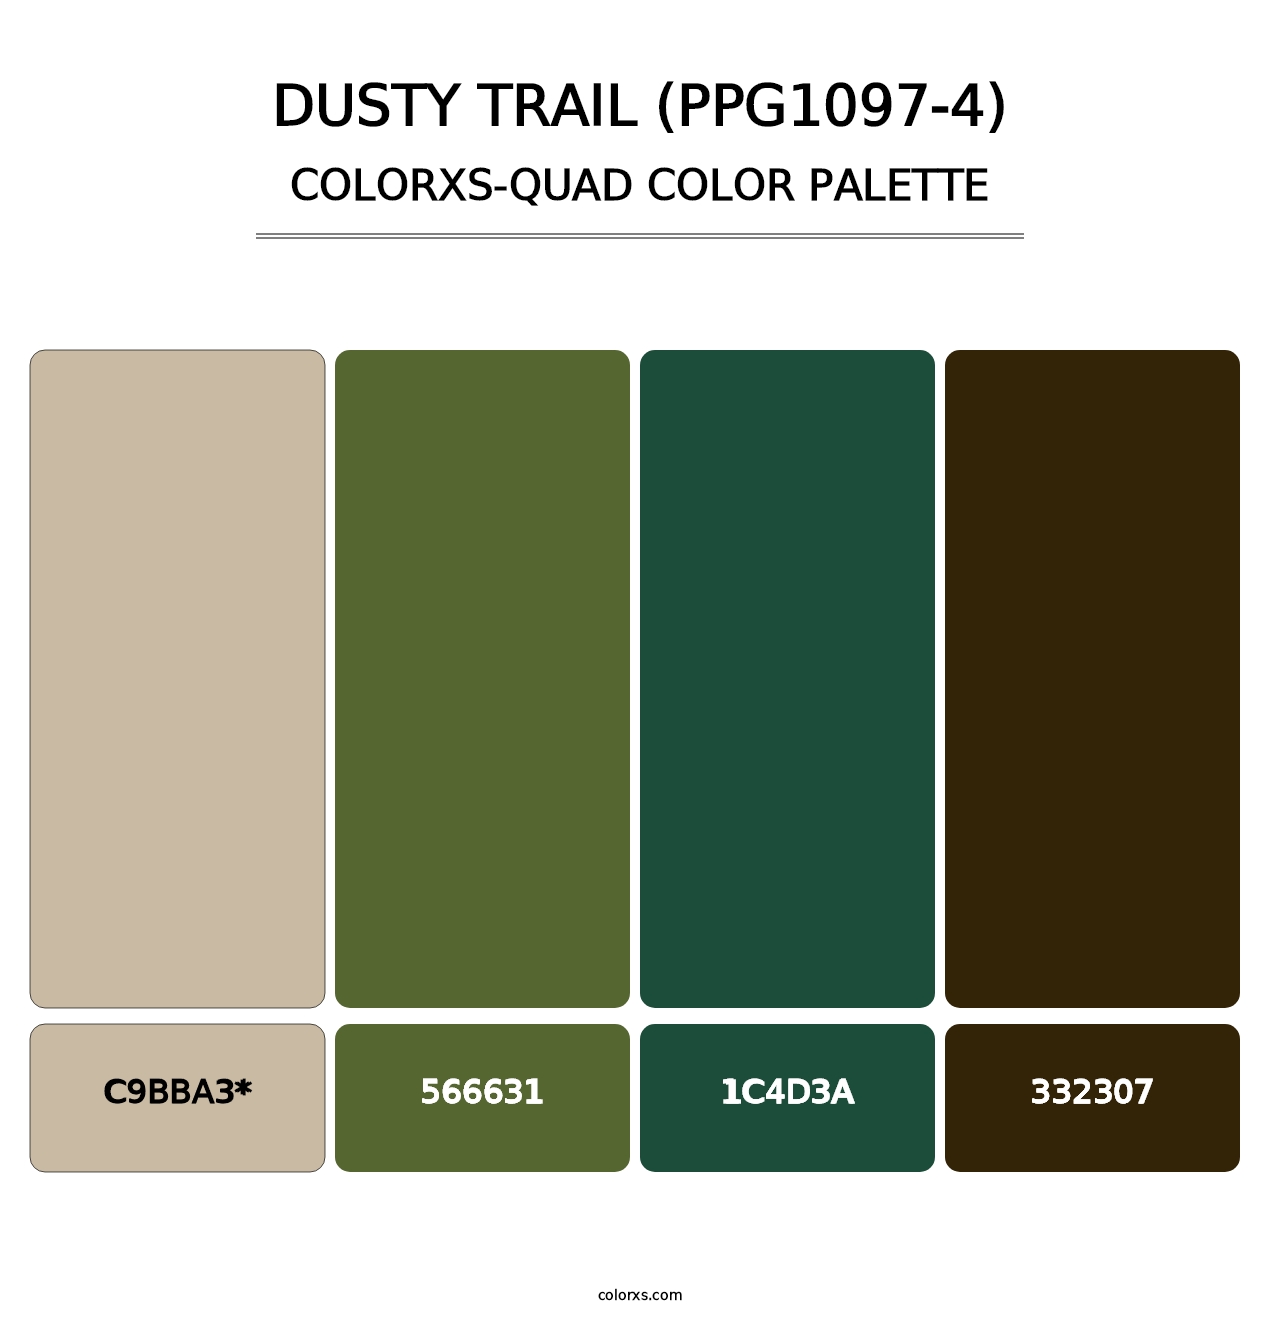 Dusty Trail (PPG1097-4) - Colorxs Quad Palette